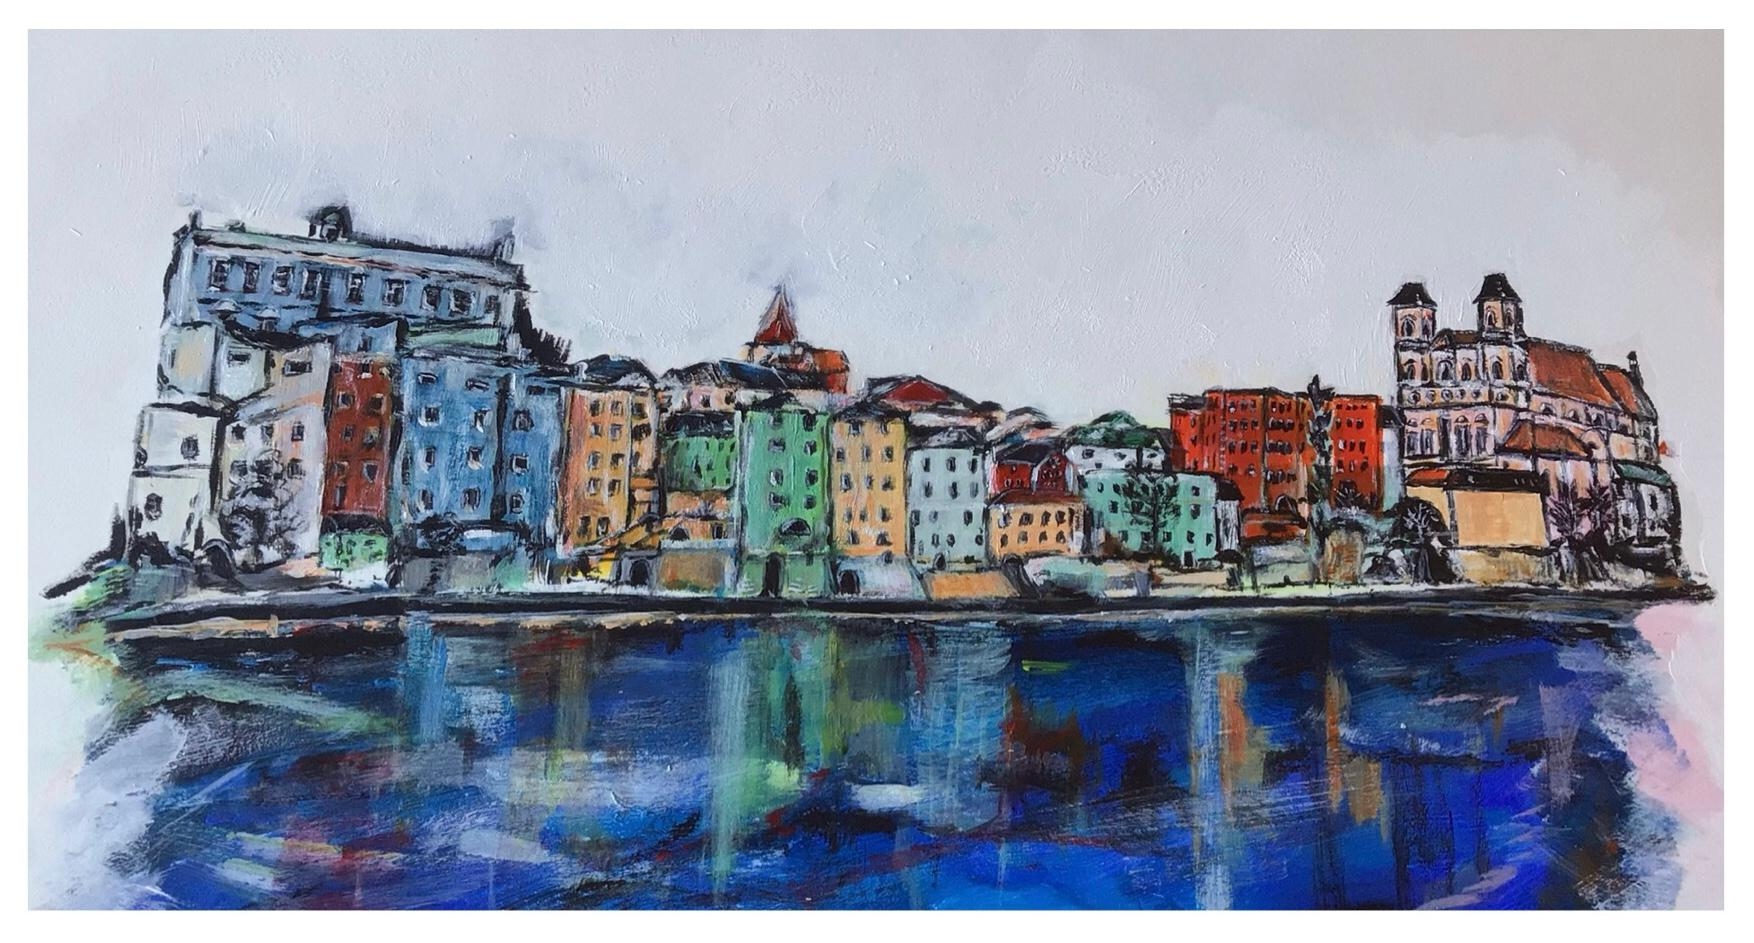 Liebe Grüße aus der malerisch schönen Stadt Passau ♥️

#art #kunst #gemälde #Bayern #Germany #leben #city #farbe 